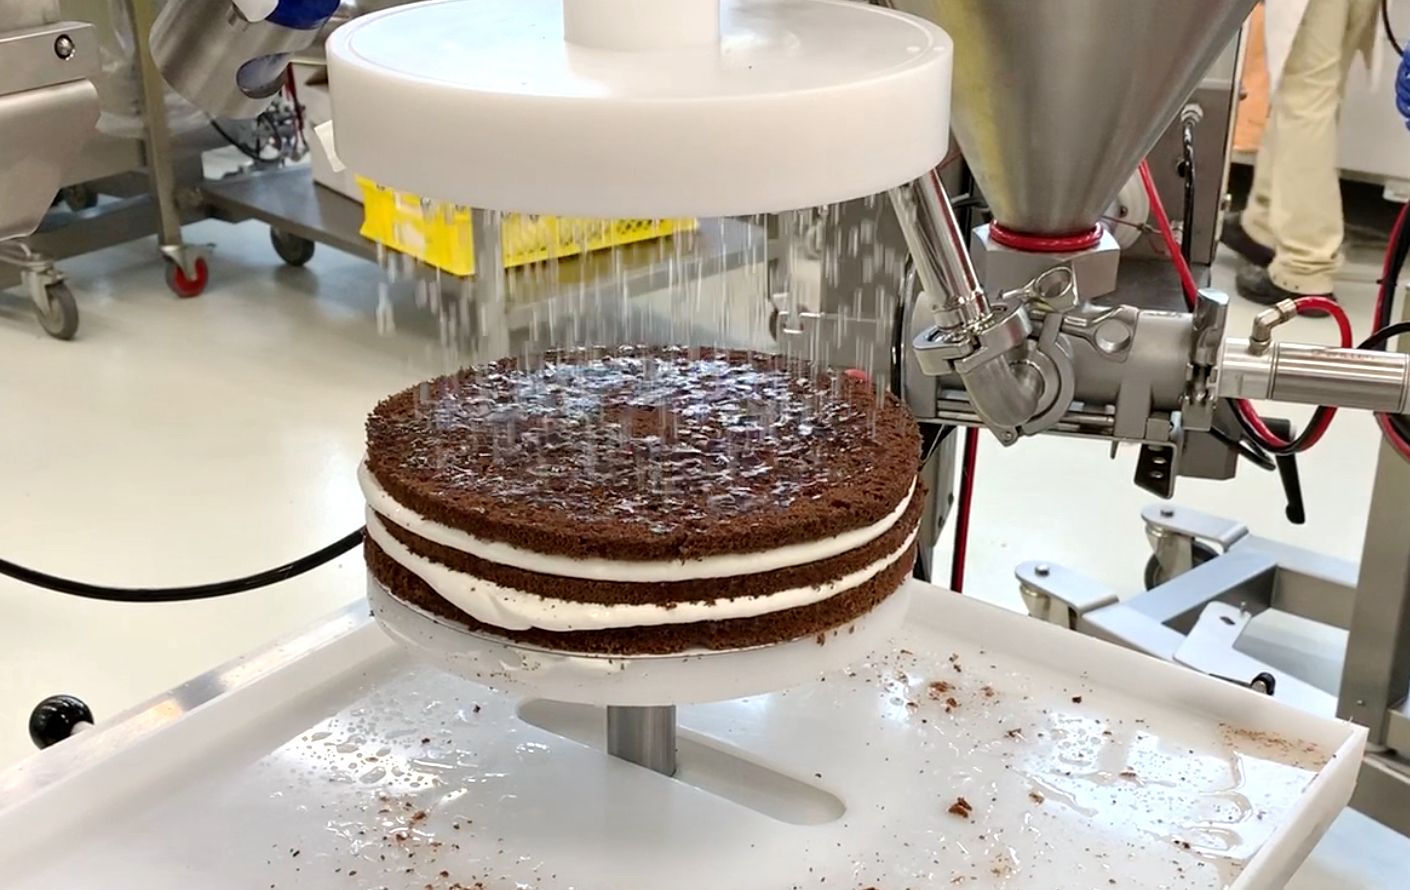 Icing a layered cake : r/oddlysatisfying